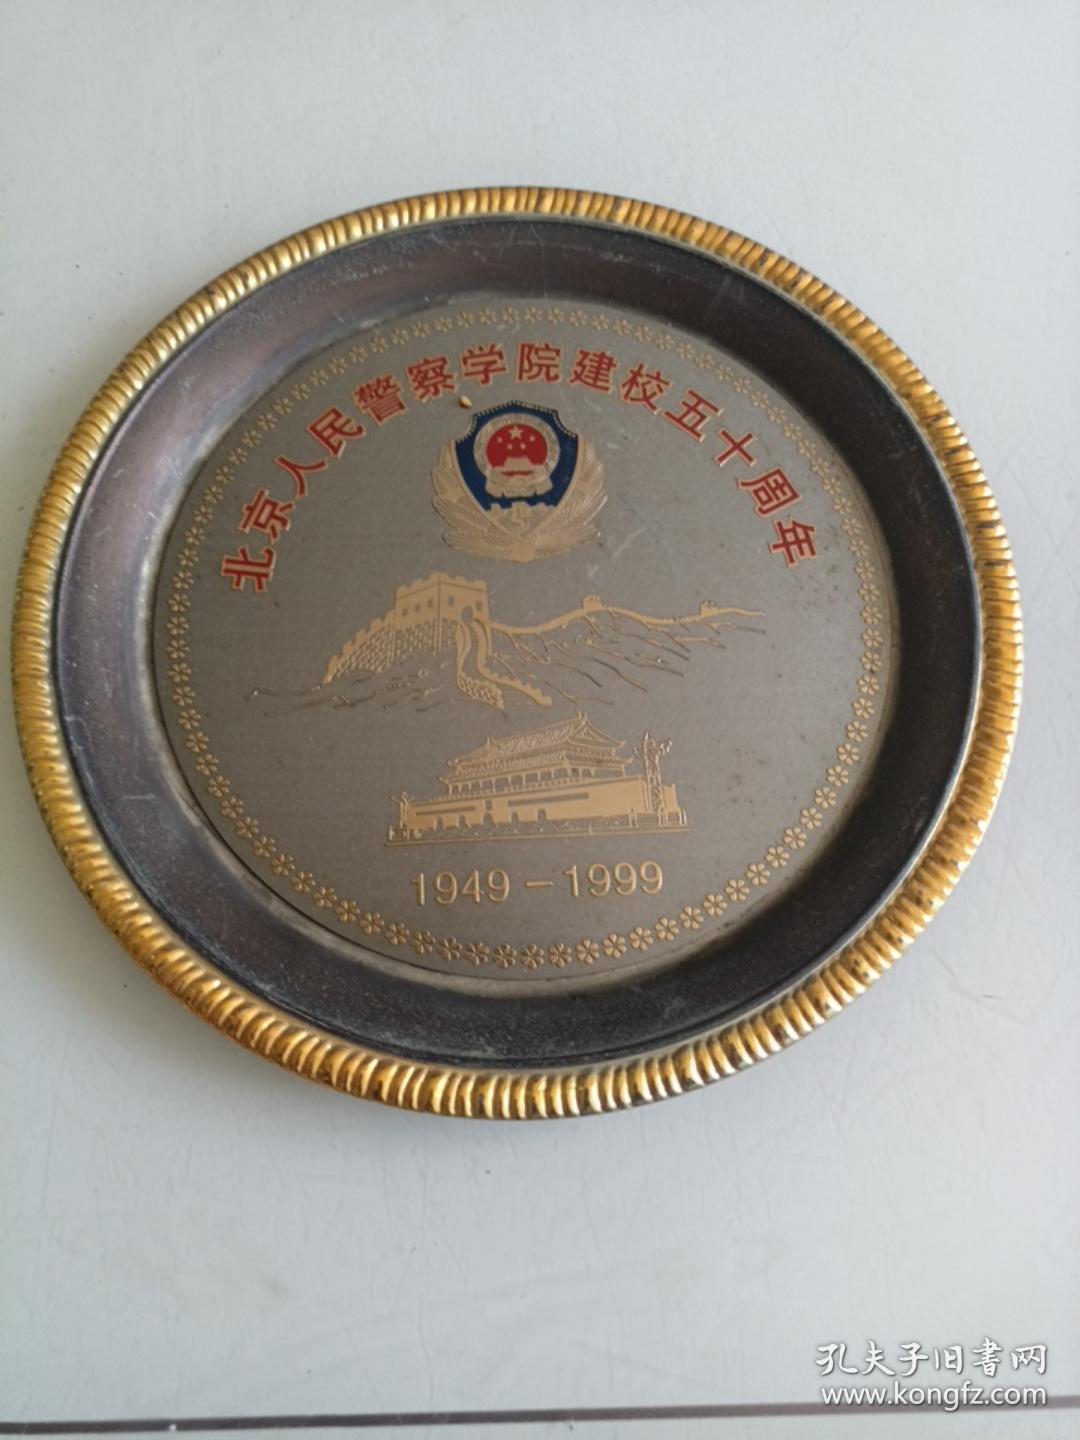 北京人民警察学院建校五十周年纪念盘20cm